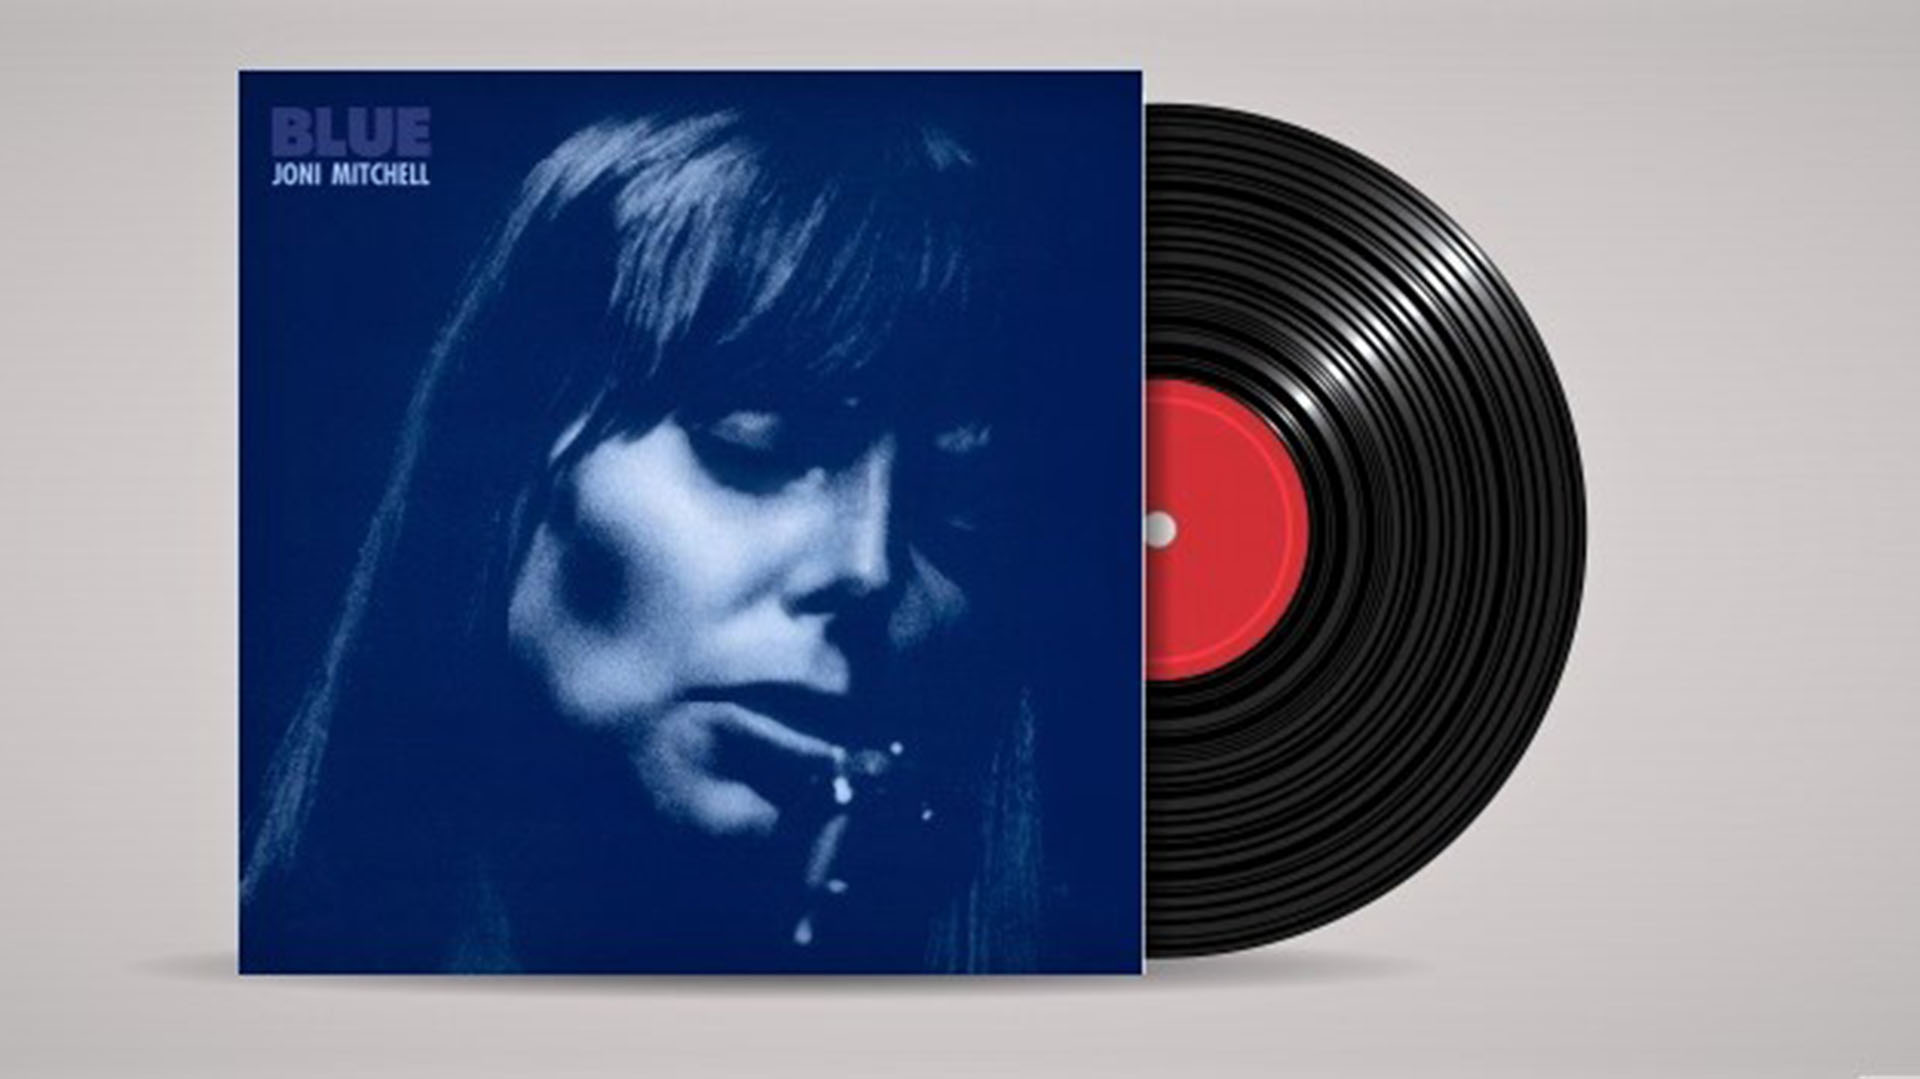 "El disco "Blue", de Joni Mitchell se ubica en uno de los puestos más altos del ranking